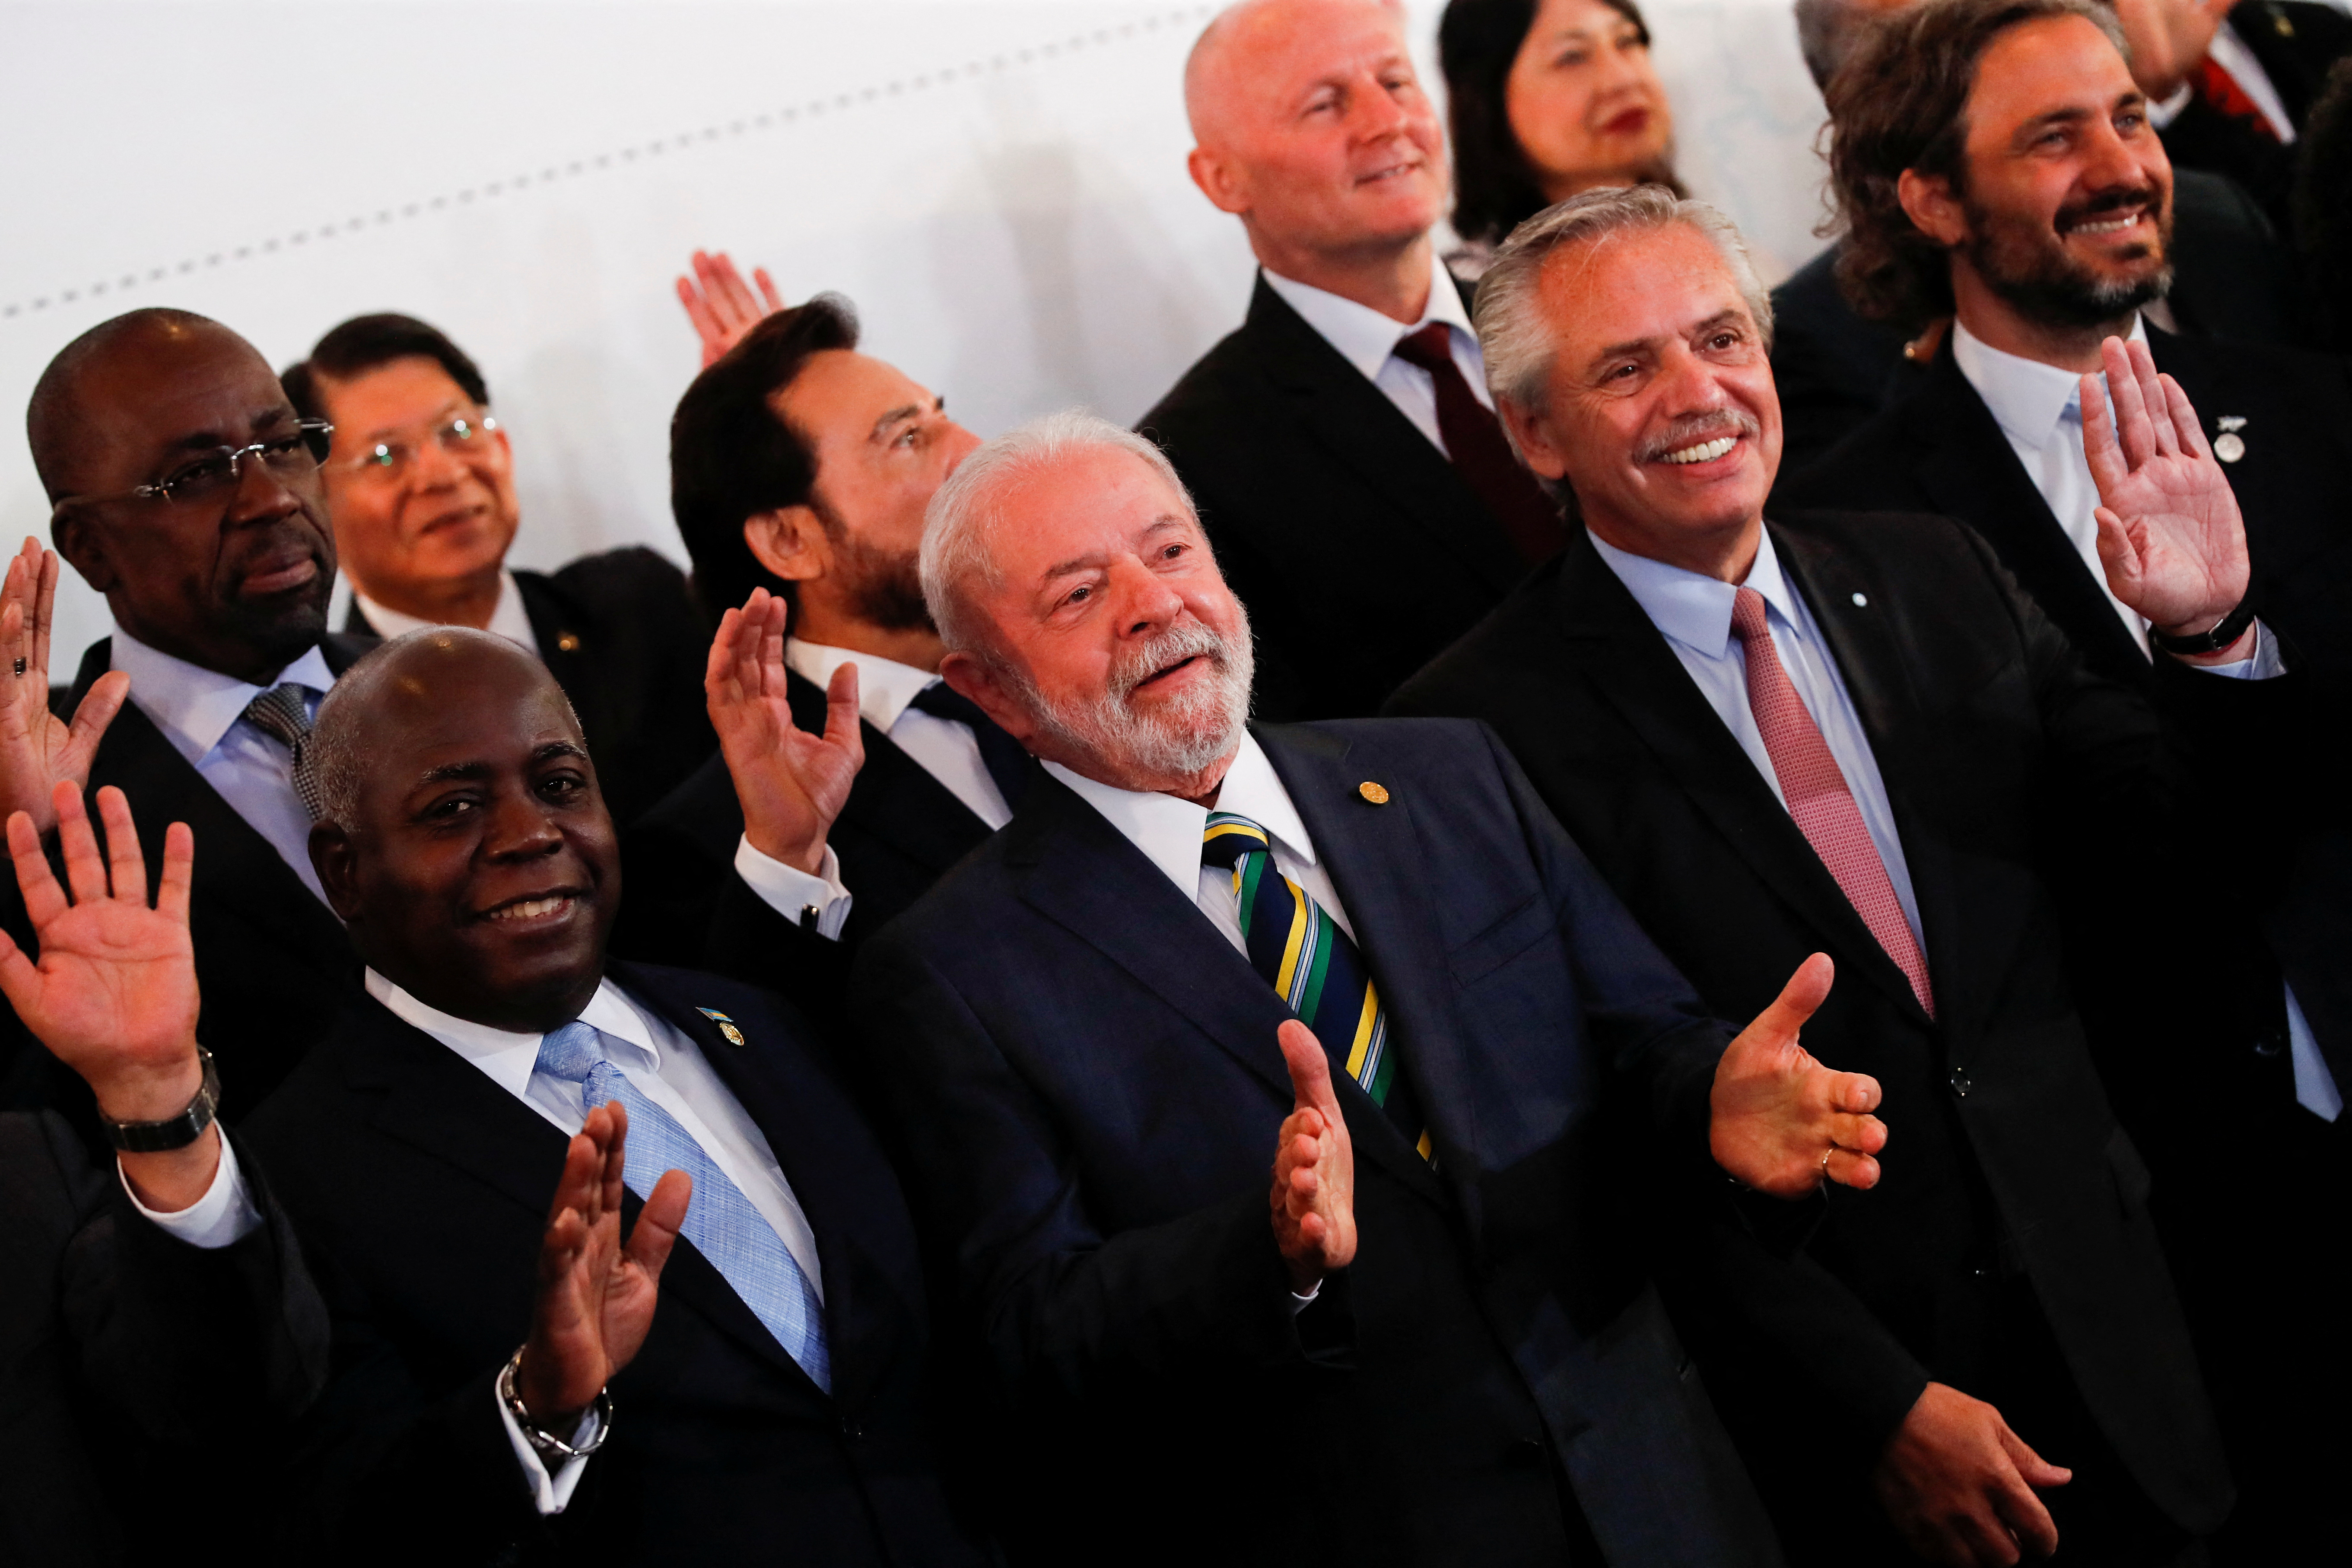  VII Cumbre de Jefes de Estado y de Gobierno de la Comunidad de Estados Latinoamericanos y Caribeños (CELAC) en Buenos Aires, Argentina, 24 de enero de 2023. REUTERS/Agustin Marcarian